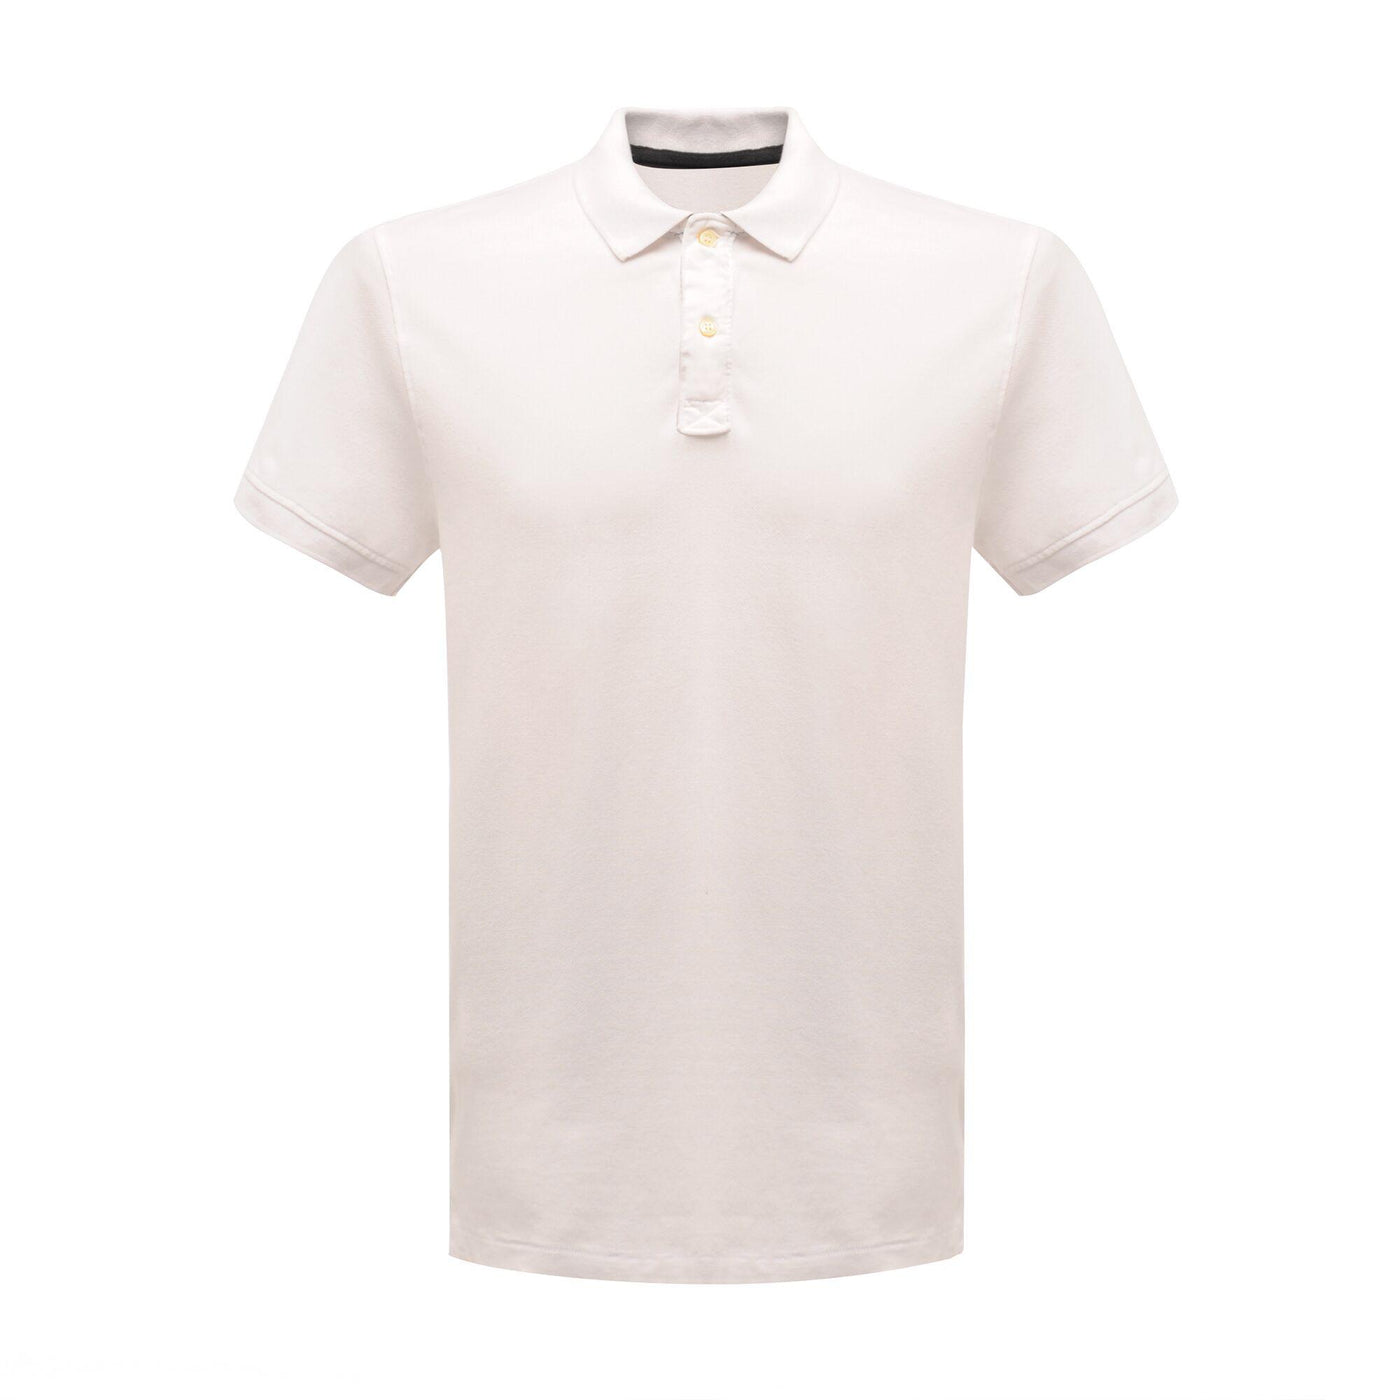 Regatta Professional Mens Classic Polo Shirt White 1#colour_white